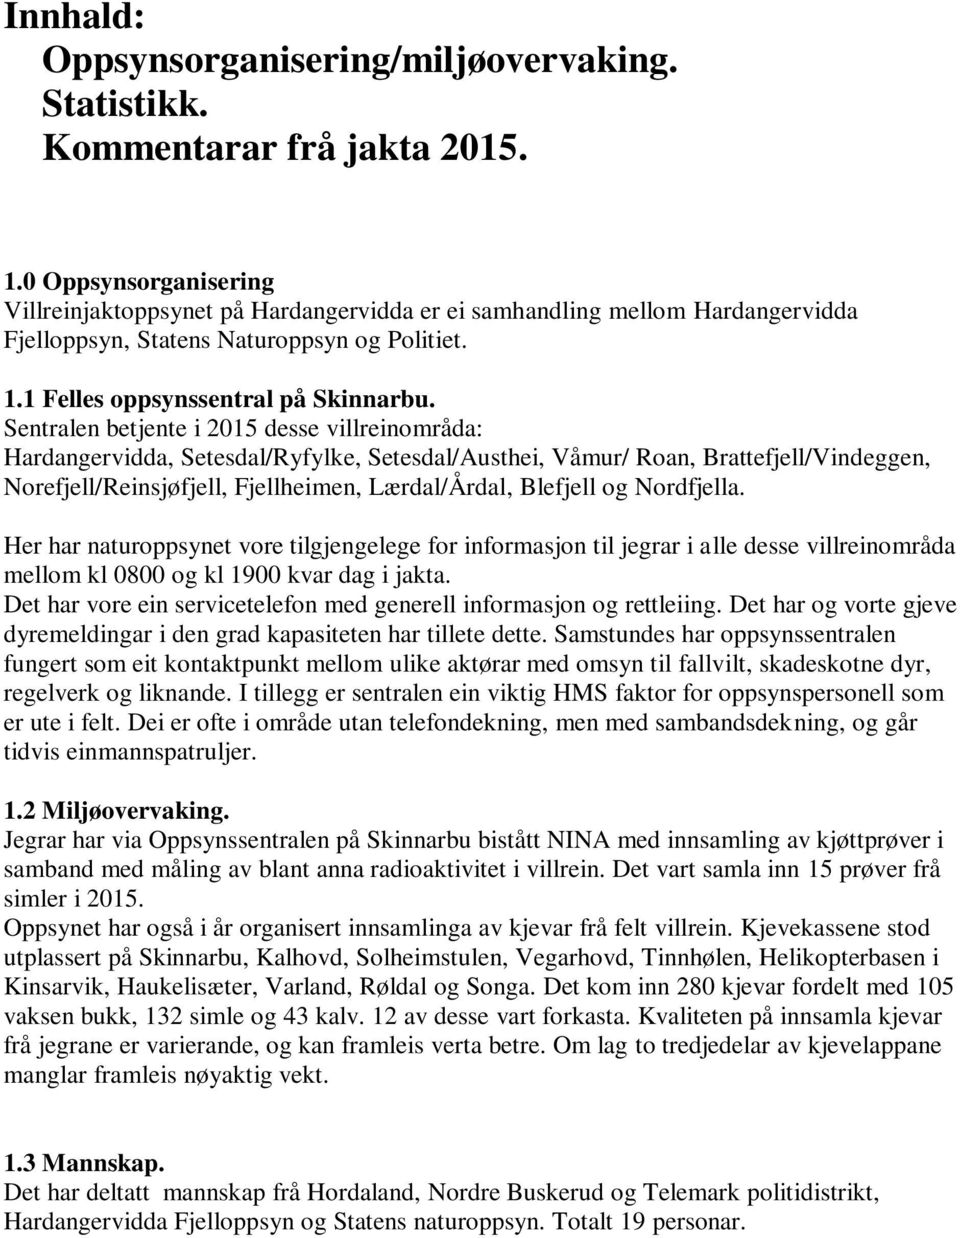 Sentralen betjente i 2015 desse villreinområda: Hardangervidda, Setesdal/Ryfylke, Setesdal/Austhei, Våmur/ Roan, Brattefjell/Vindeggen, Norefjell/Reinsjøfjell, Fjellheimen, Lærdal/Årdal, Blefjell og